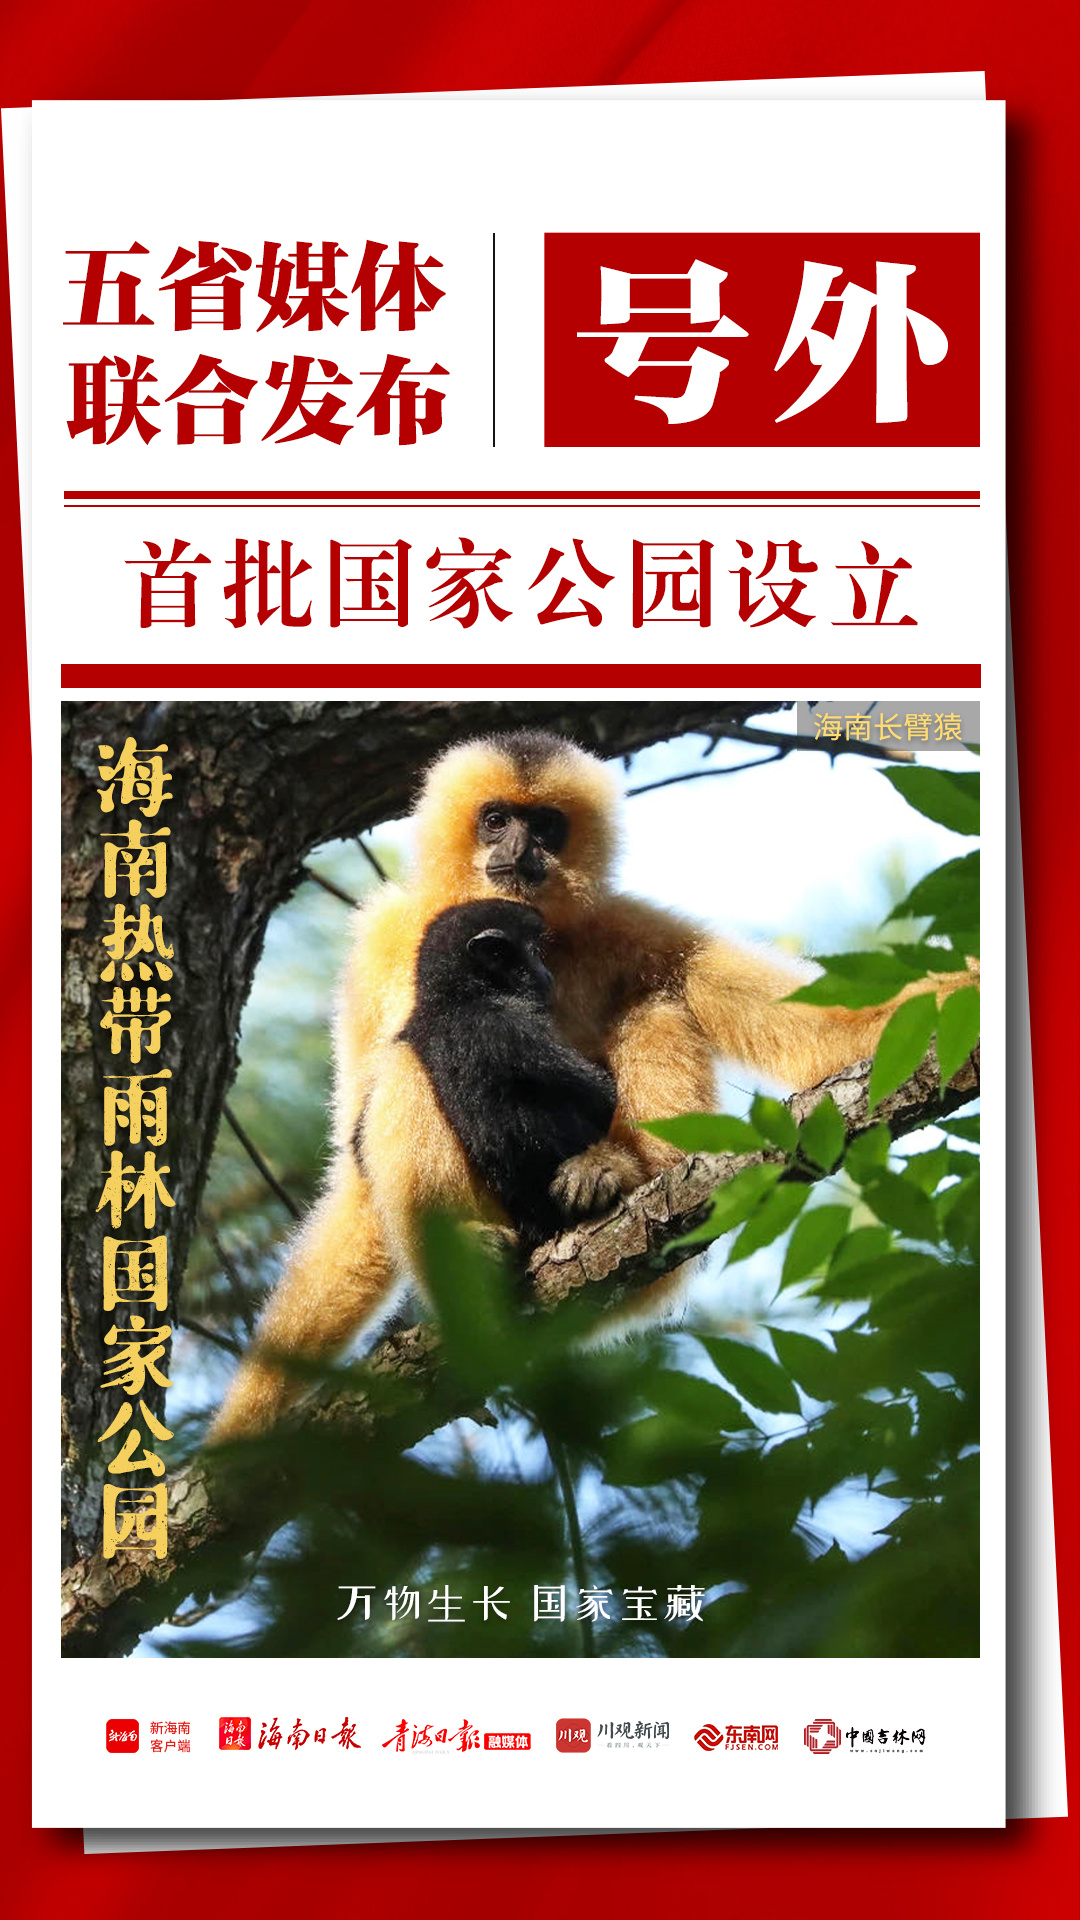 海南联动4省媒体同步发布首批国家公园号外海报